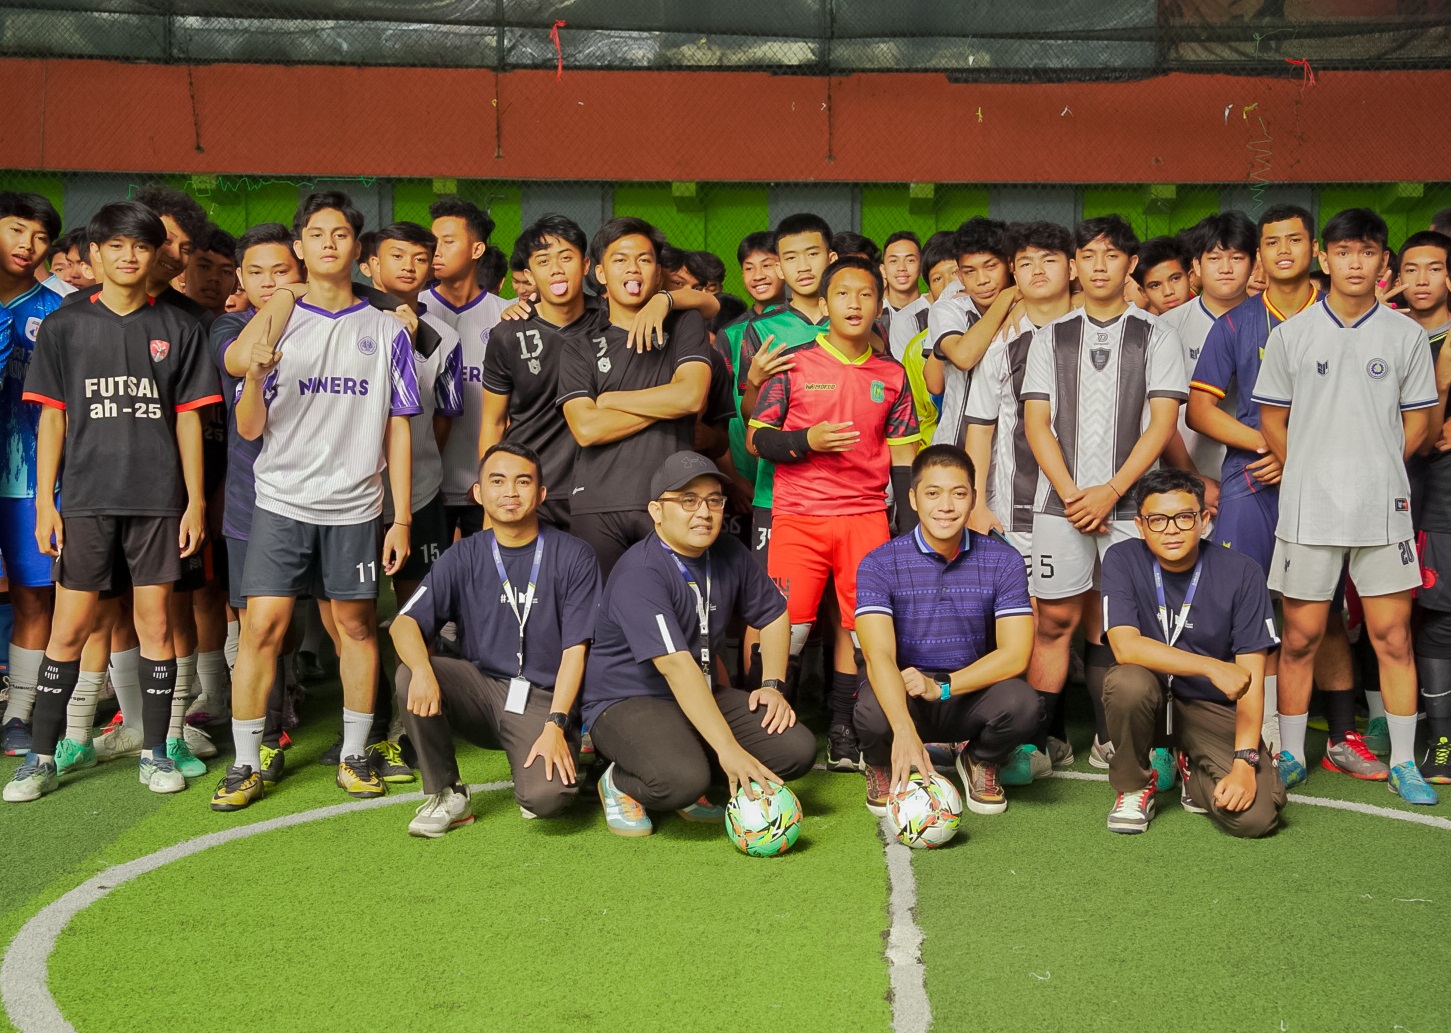 Pembukaan turnamen futsal antar pelajar SMA se-Kota Bandung bertajuk Rasyid Rajasa Cup di Bikasoga Sport Center, Sabtu (28/20).